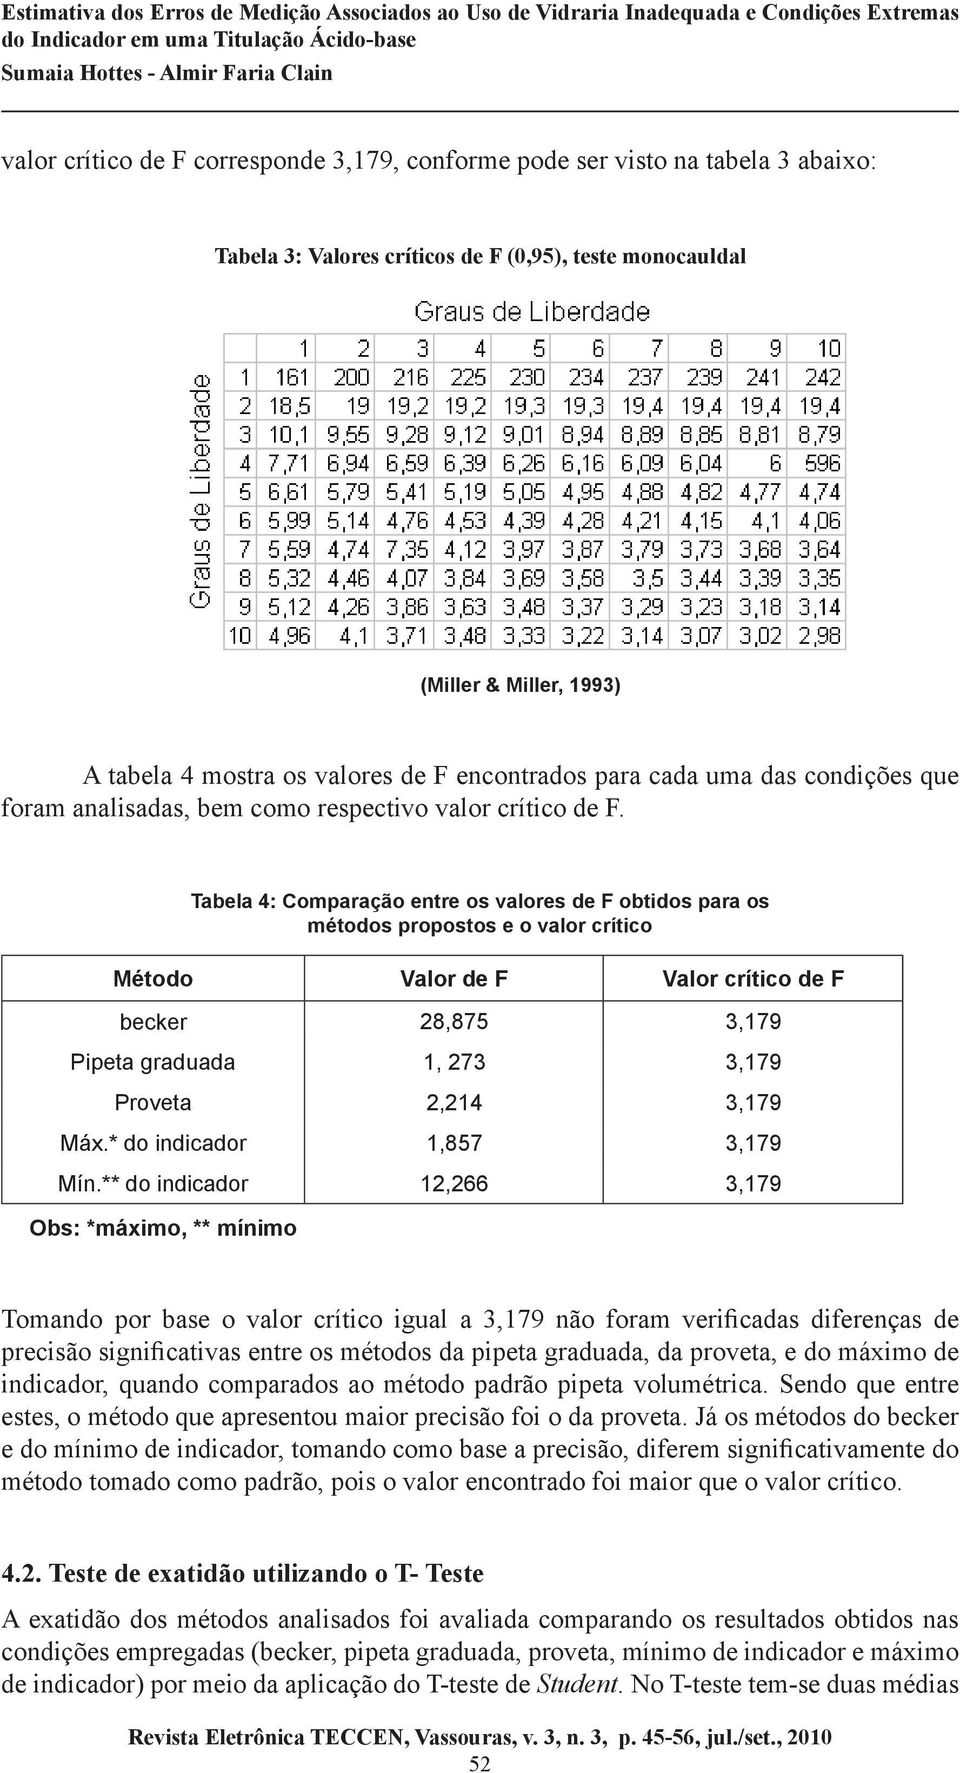 Tabela 4: Comparação entre os valores de F obtidos para os métodos propostos e o valor crítico Valor de F Valor crítico de F becker 28,875 3,179 Pipeta graduada Proveta Máx.* do indicador Mín.